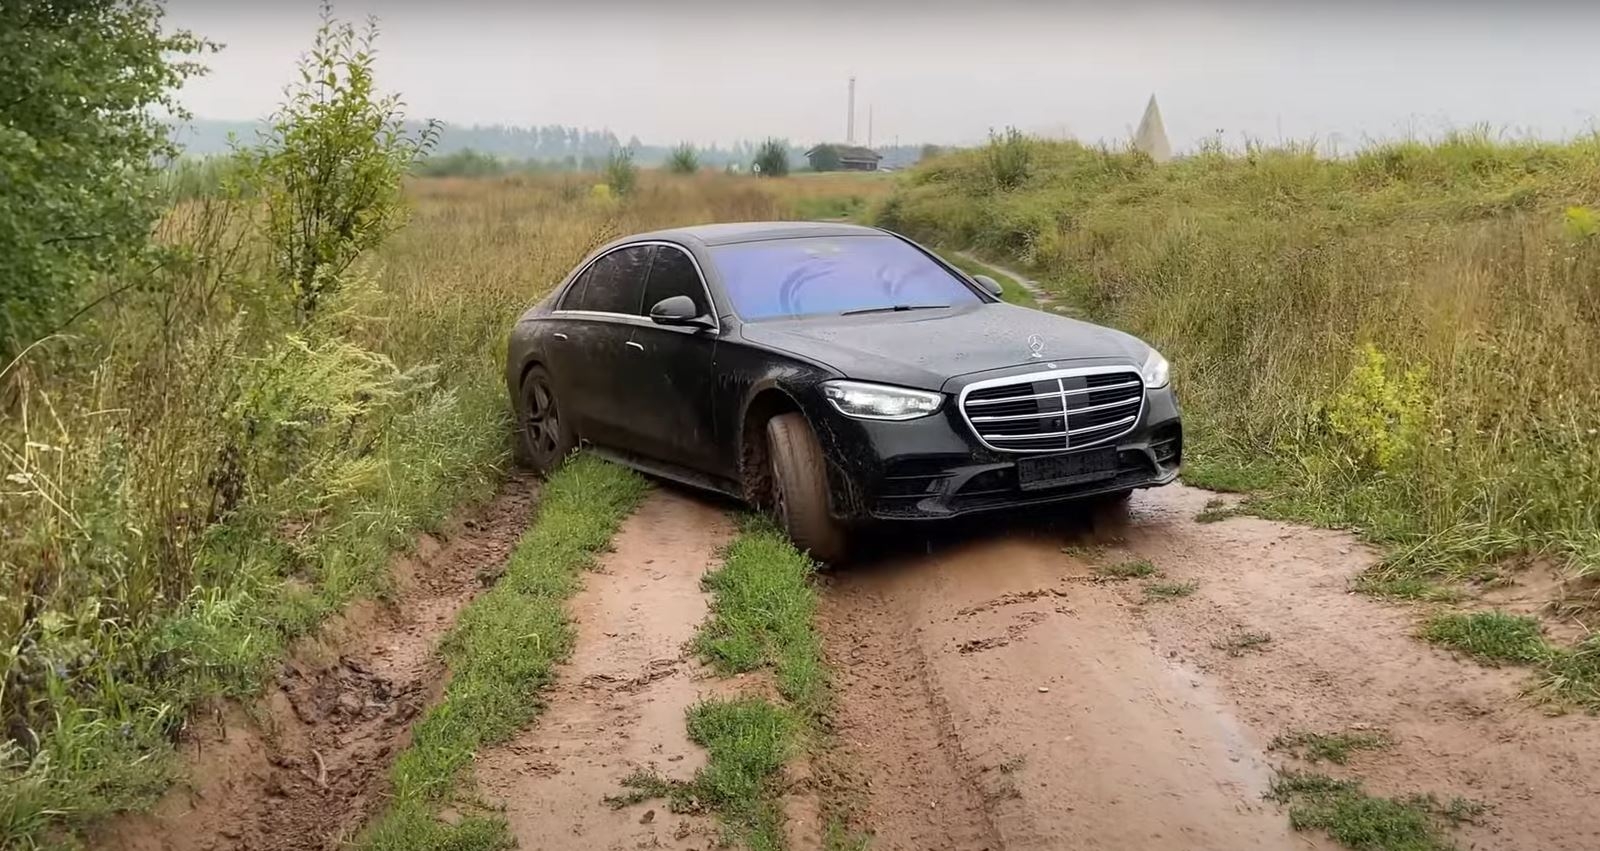 Блогеры из России решили проверить новый Mercedes-Benz S-класса за 16 миллионов рублей на бездорожье